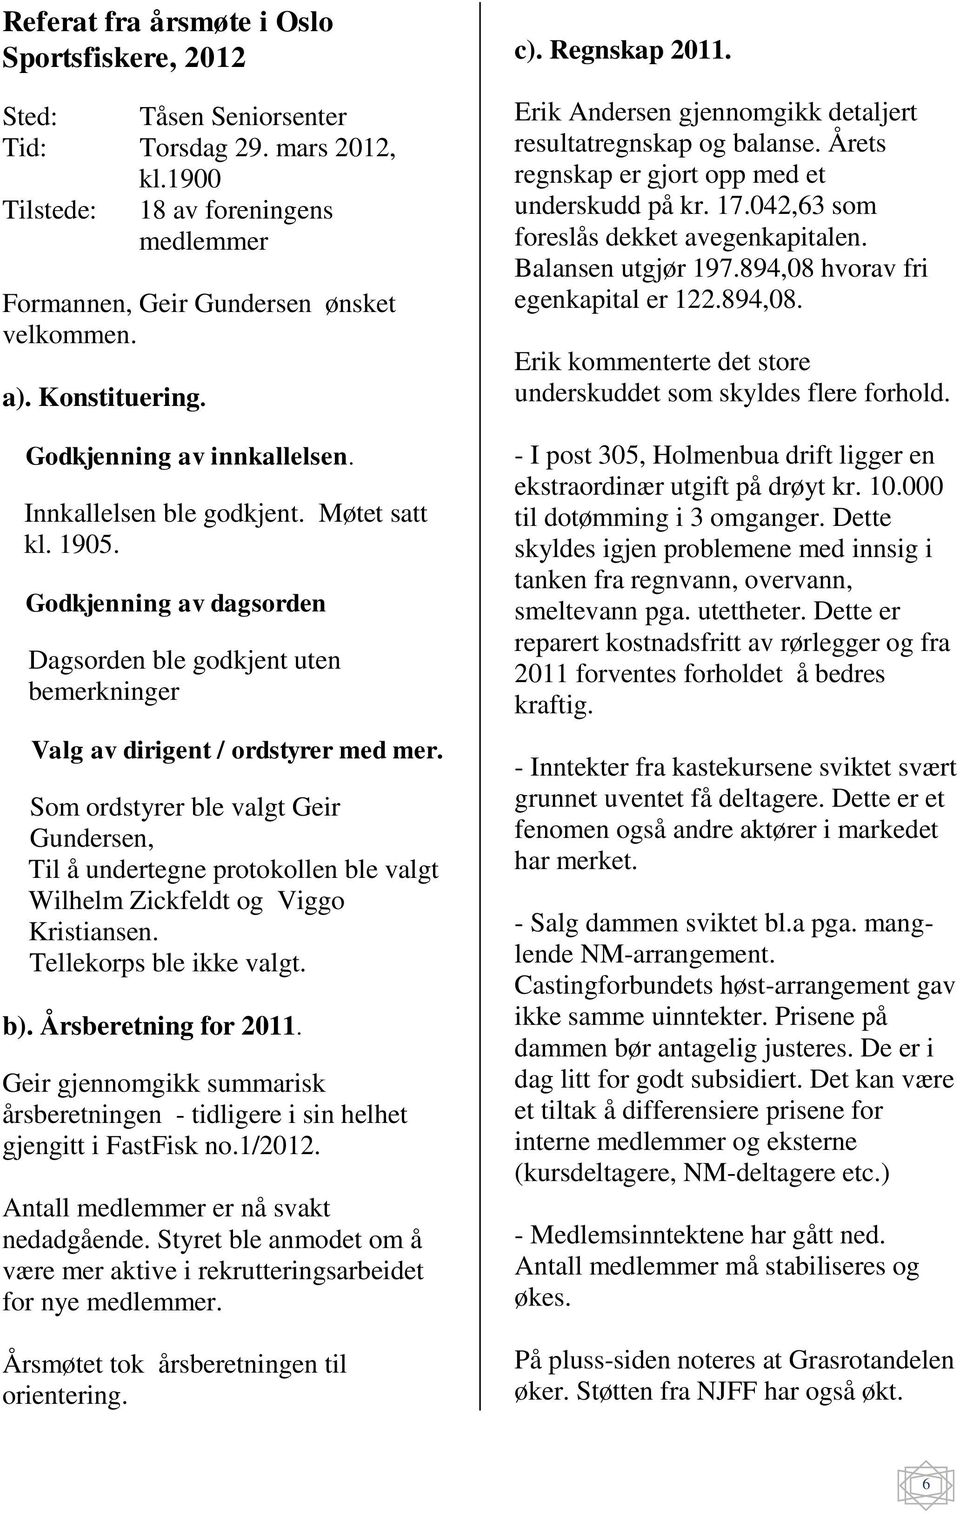 Som ordstyrer ble valgt Geir Gundersen, Til å undertegne protokollen ble valgt Wilhelm Zickfeldt og Viggo Kristiansen. Tellekorps ble ikke valgt. b). Årsberetning for 2011.